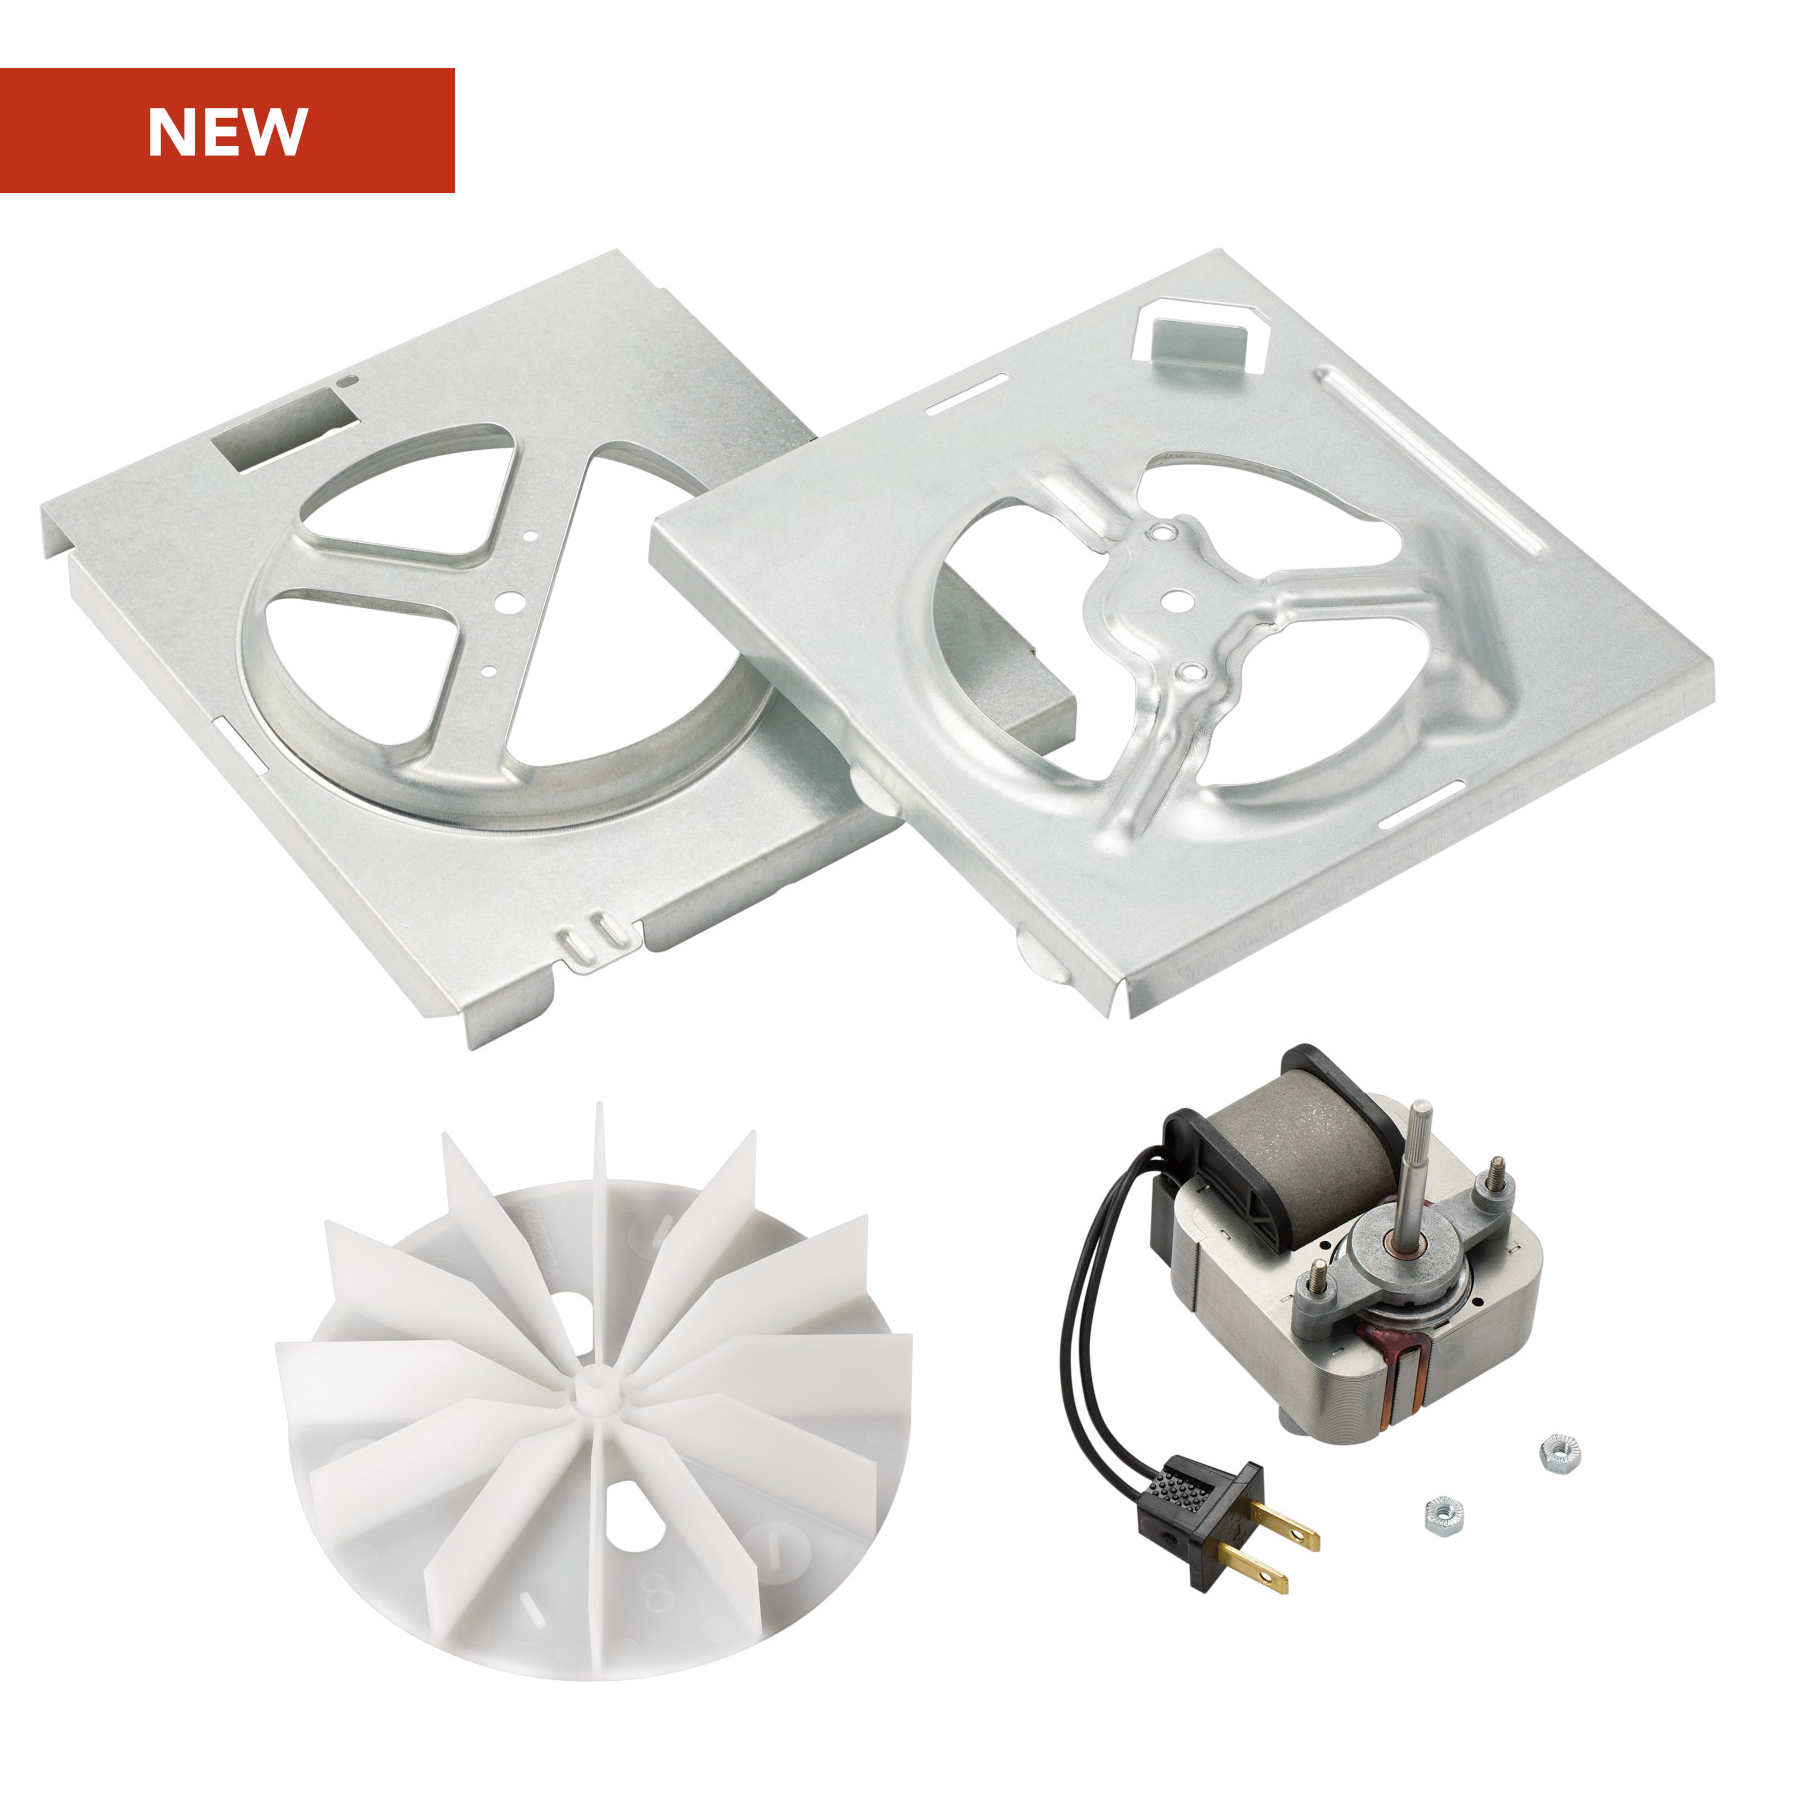 Broan-NuTone® 70 CFM Bath Fan Replacement Motor Kit